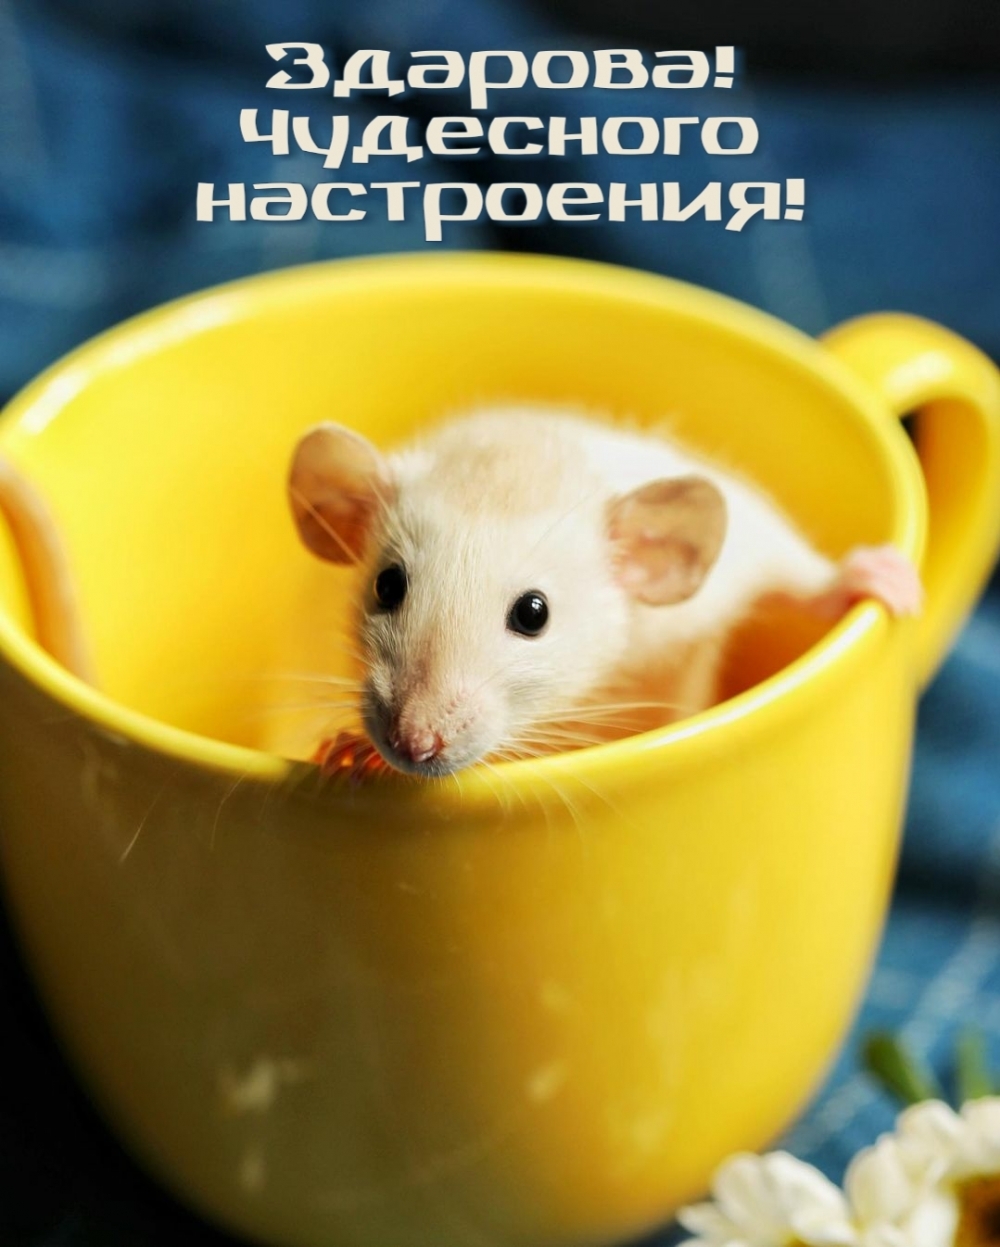 Маленький мышонок в желтой чашке